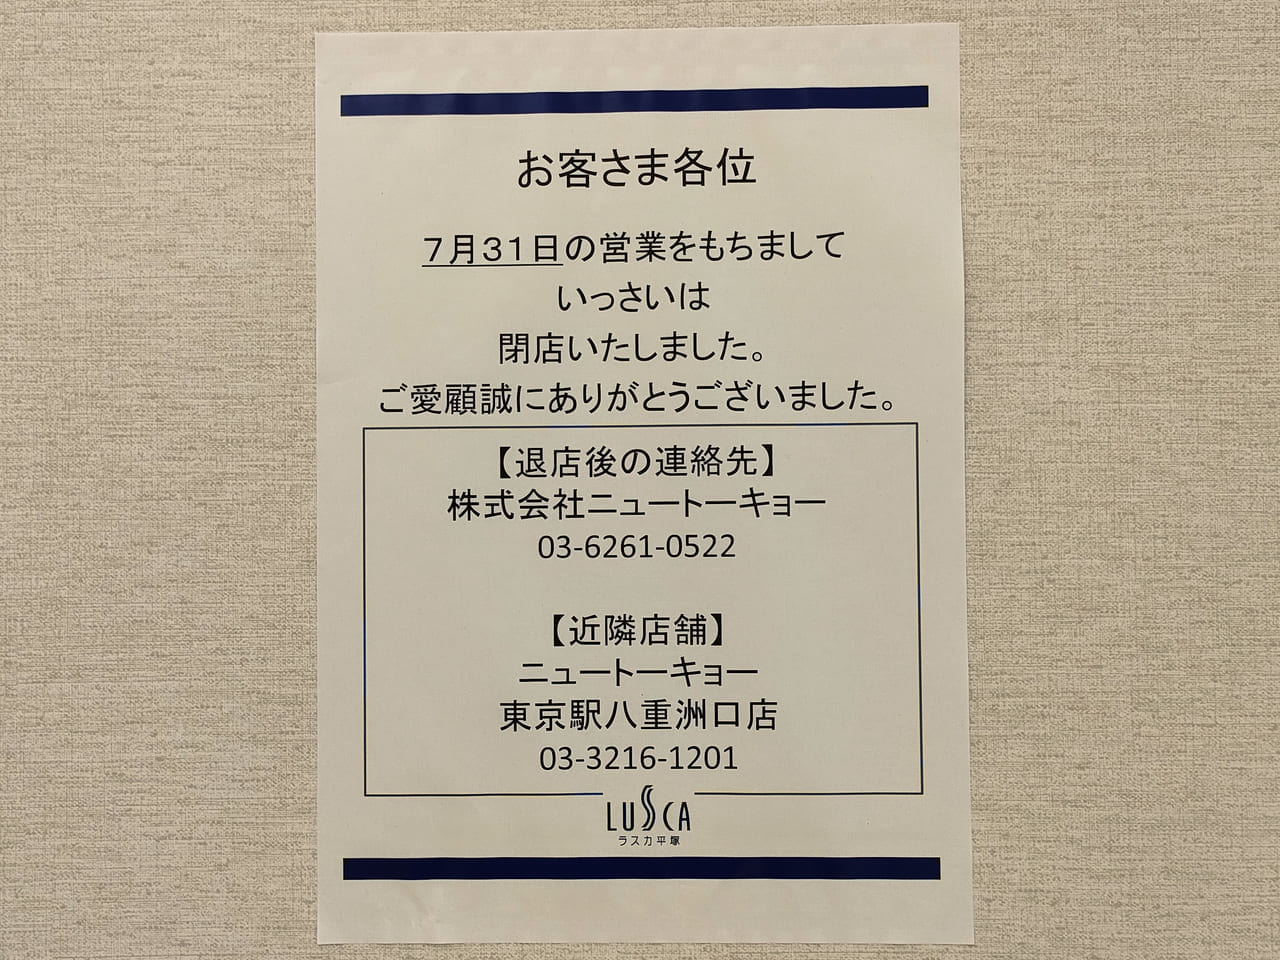 ラスカ5階にあった日本料理店「いっさい」が7月31日（月）に閉店